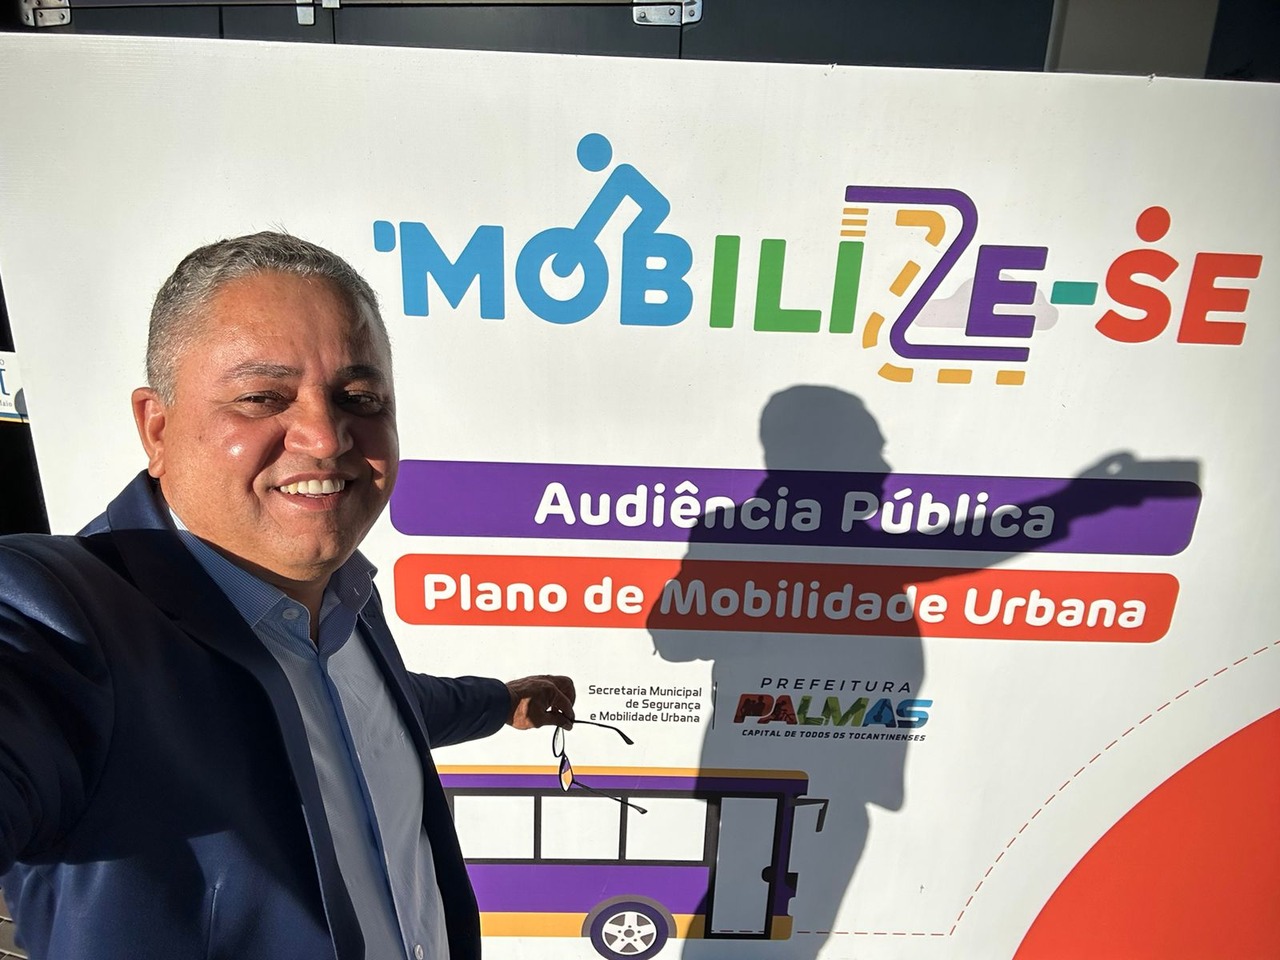 Vereador Eudes Assis (PSDB) solicita ampliação da linha de transporte coletivo em audiência pública sobre mobilidade urbana em Palmas